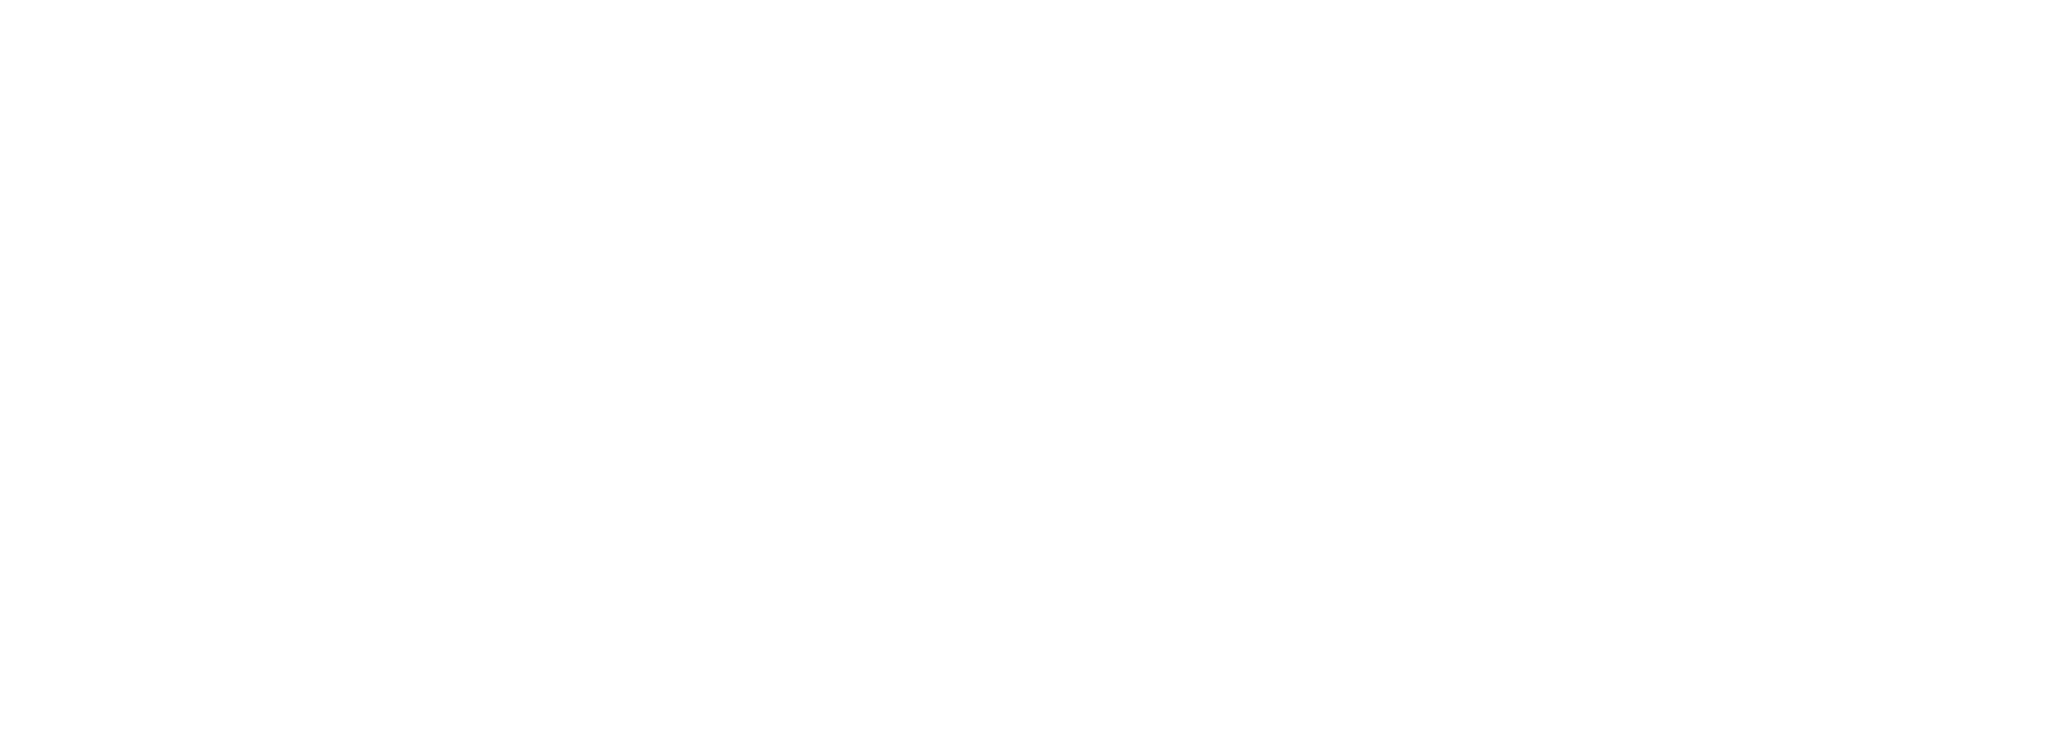 RevTech FinTech